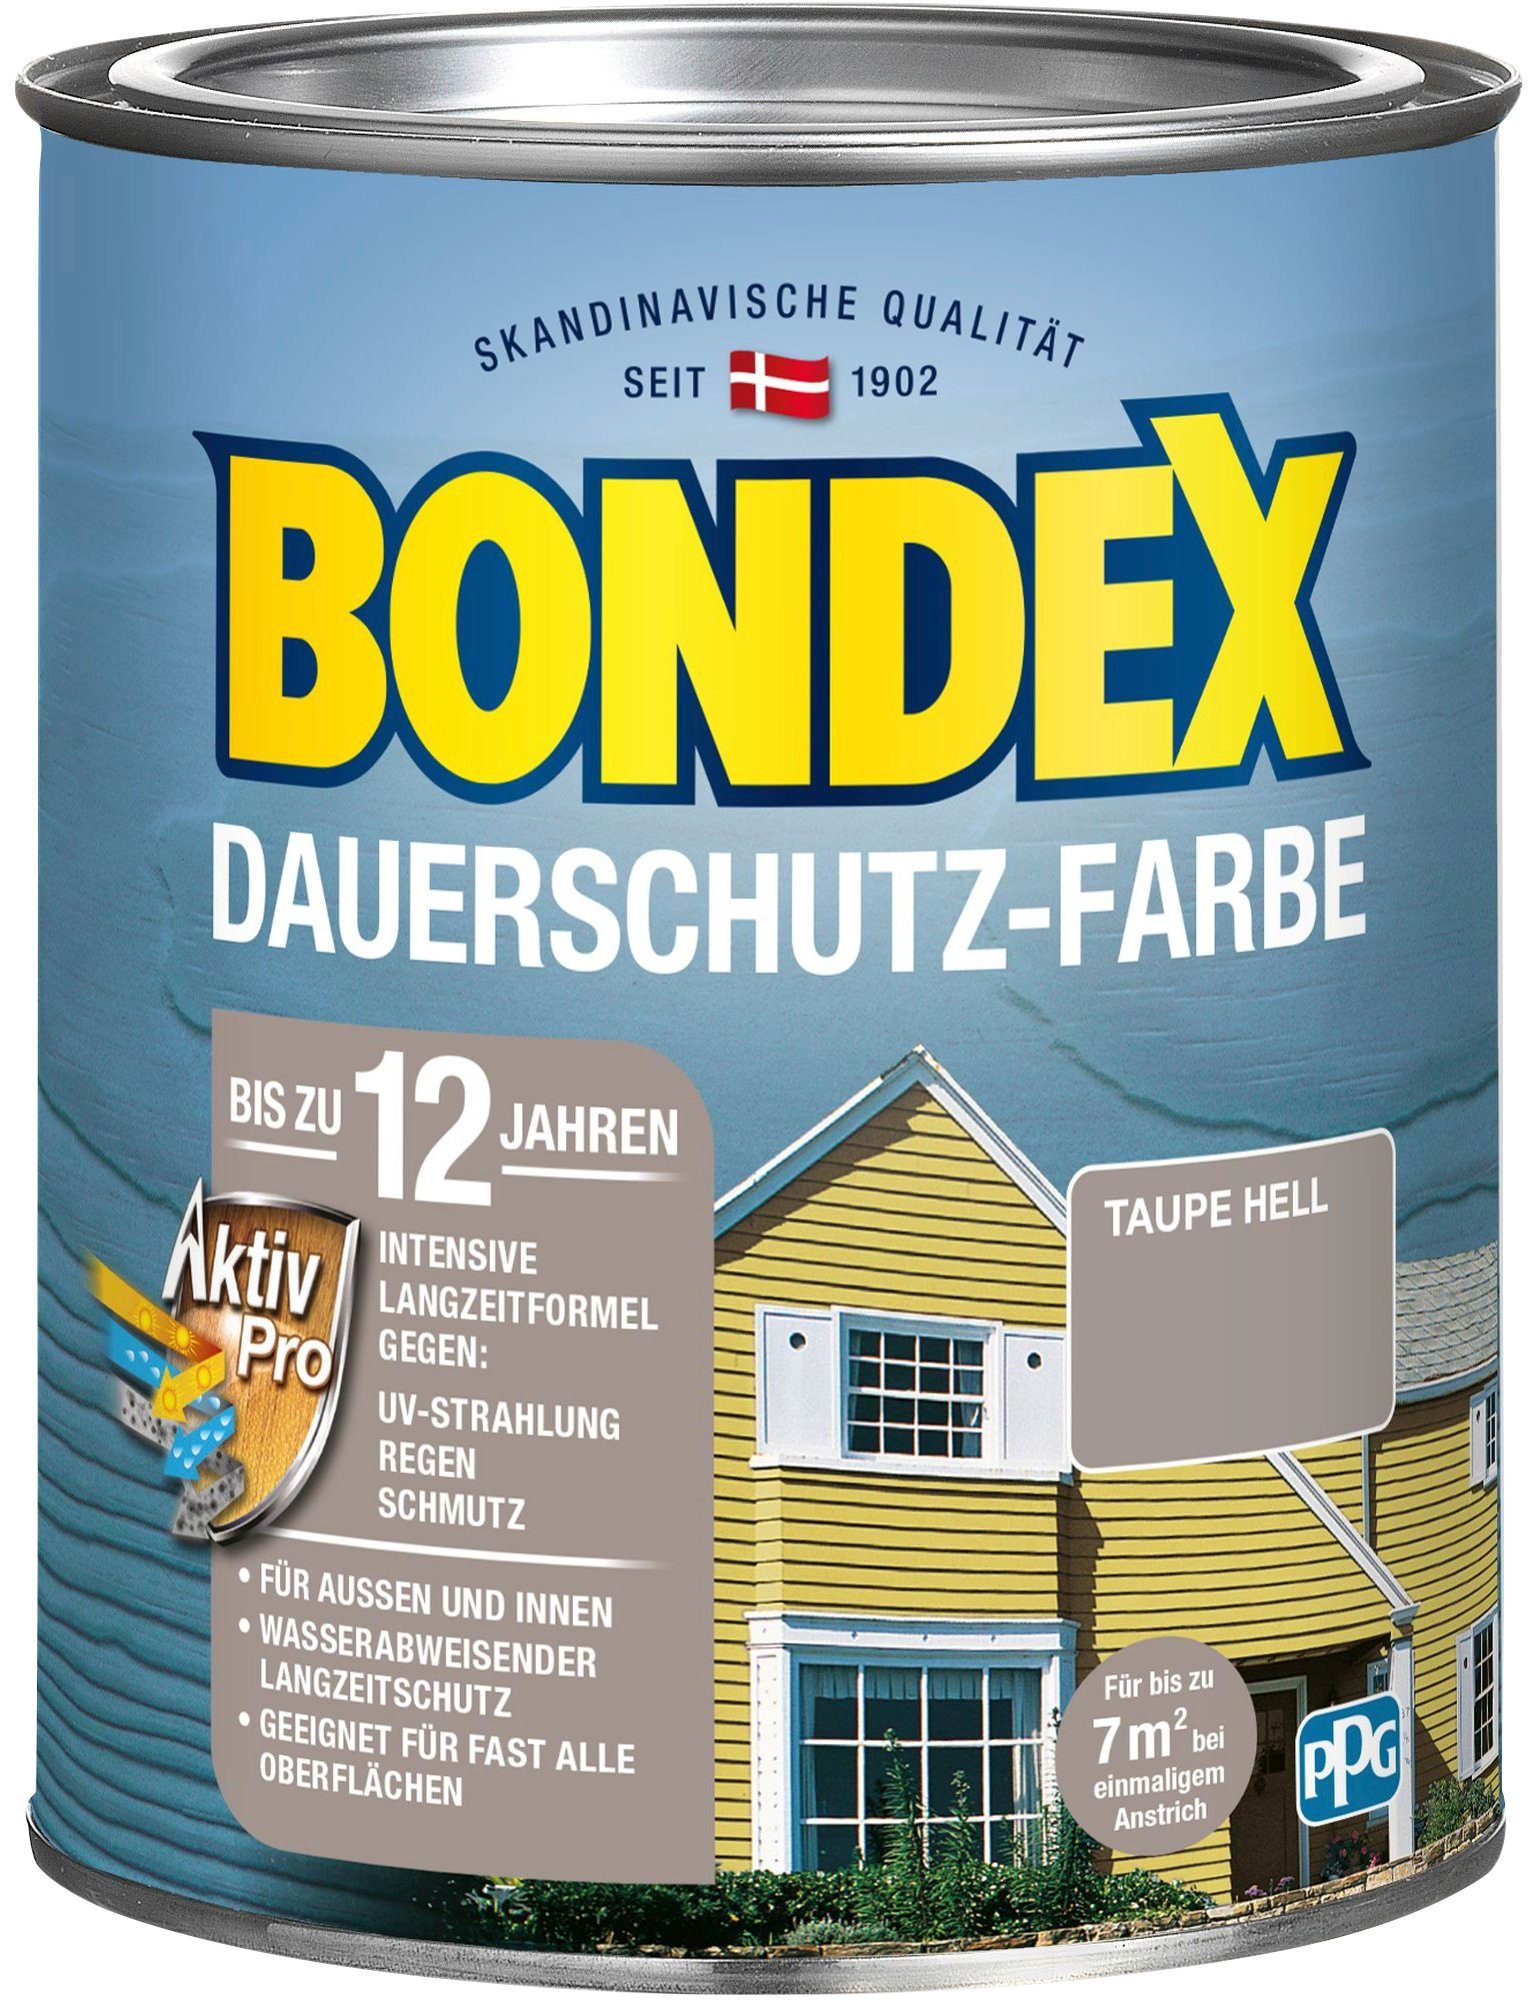 Bondex Wetterschutzfarbe DAUERSCHUTZ-FARBE, für Außen und Innen, Wetterschutz mit Aktiv Pro Langzeitformel Taupe Hell